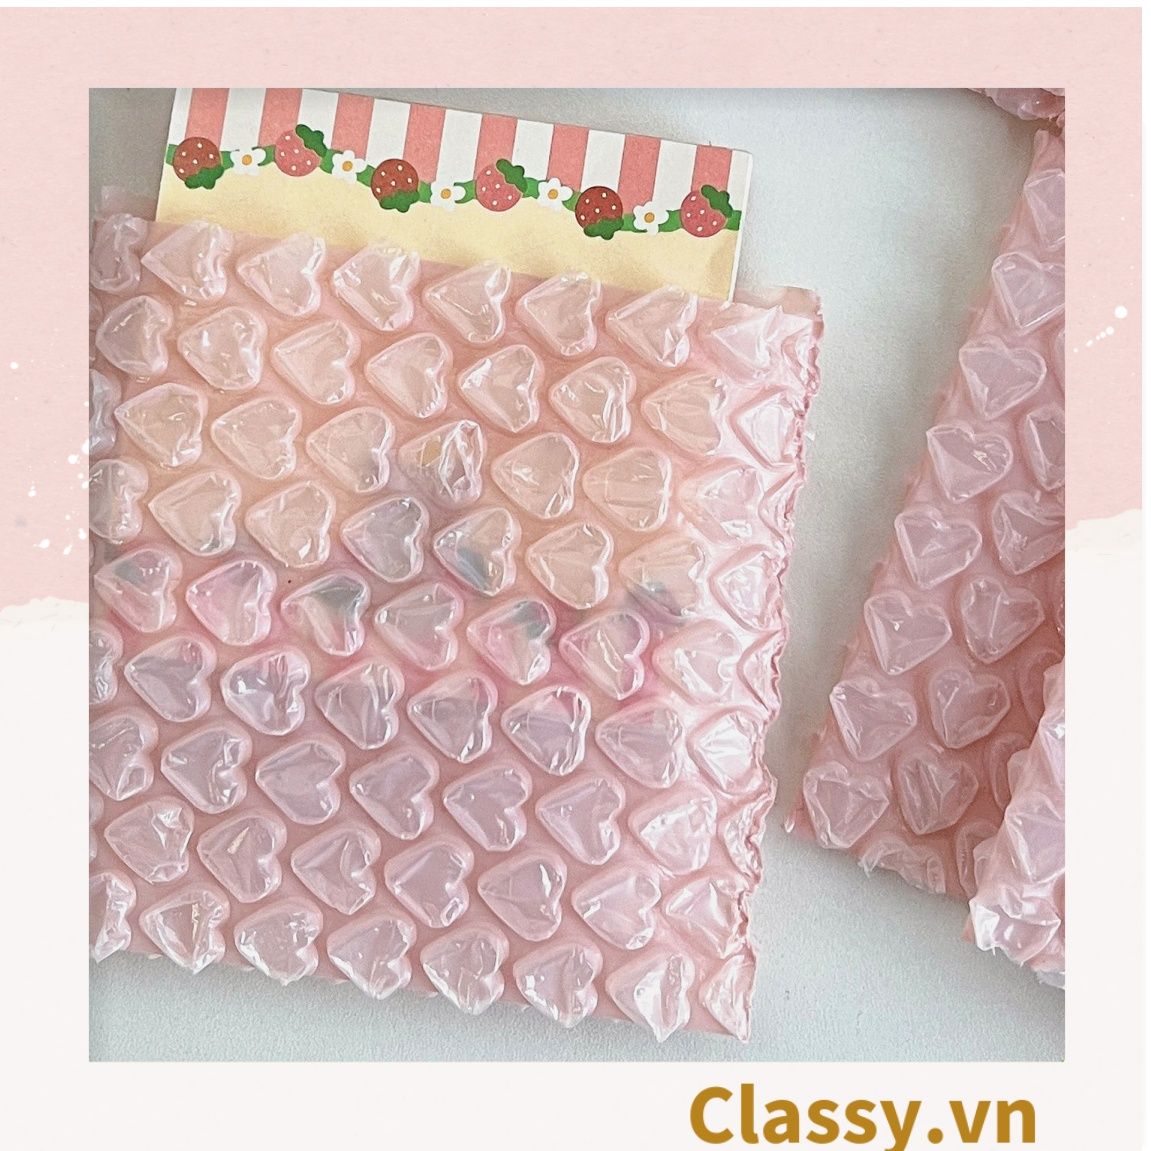  Túi chống sốc Classy đóng gói quà tặng bong bóng tình yêu màu hồng kích thước 10 X 10 cm Q1721 